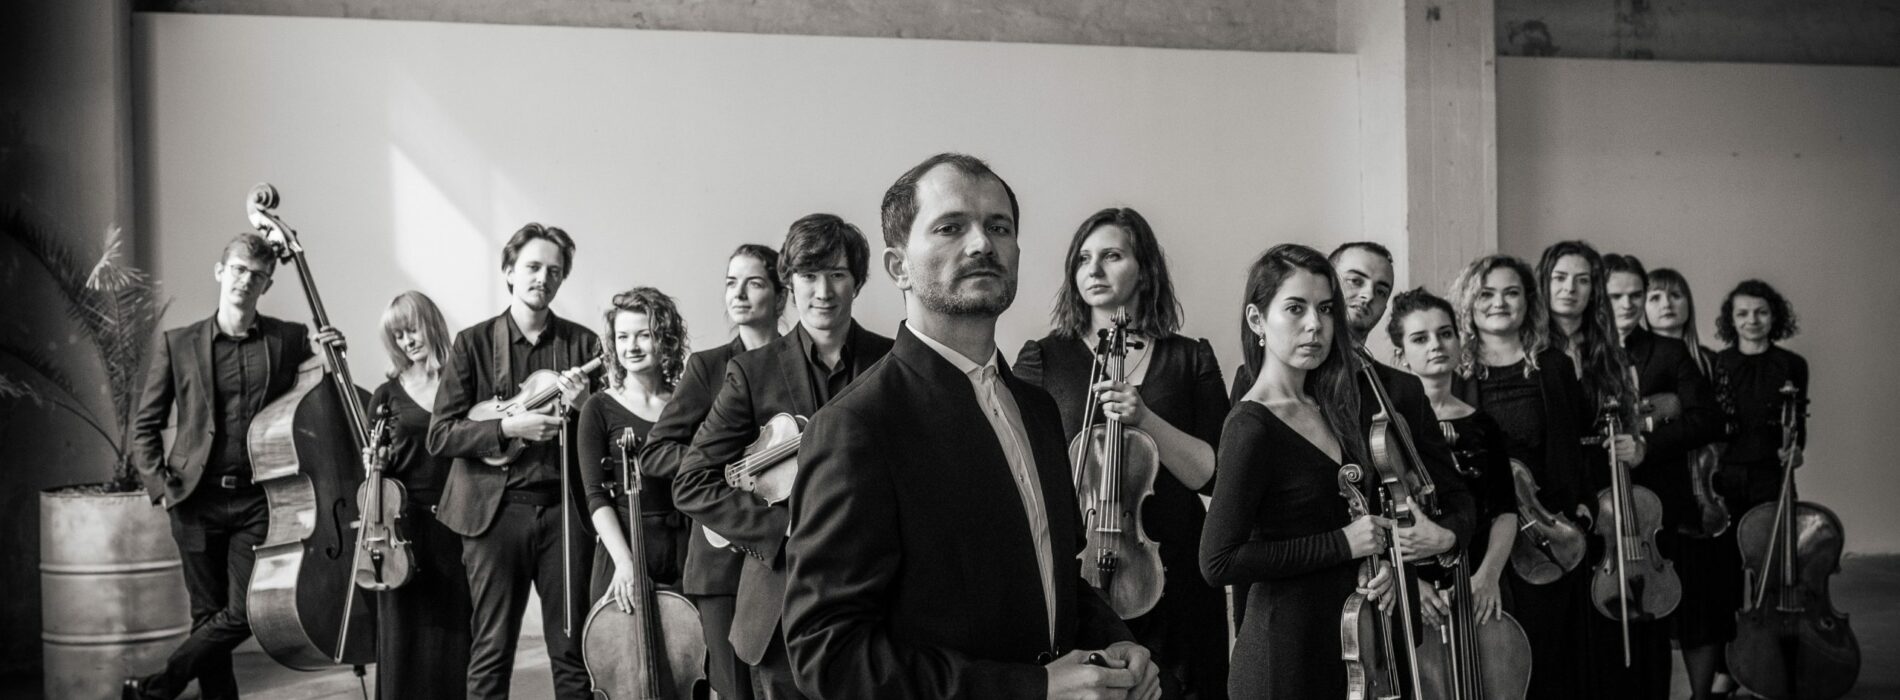 Premierowy koncert płyty “Orchestral tribute to Grzegorz Ciechowski” Orkiestry Kameralnej PROGRESS